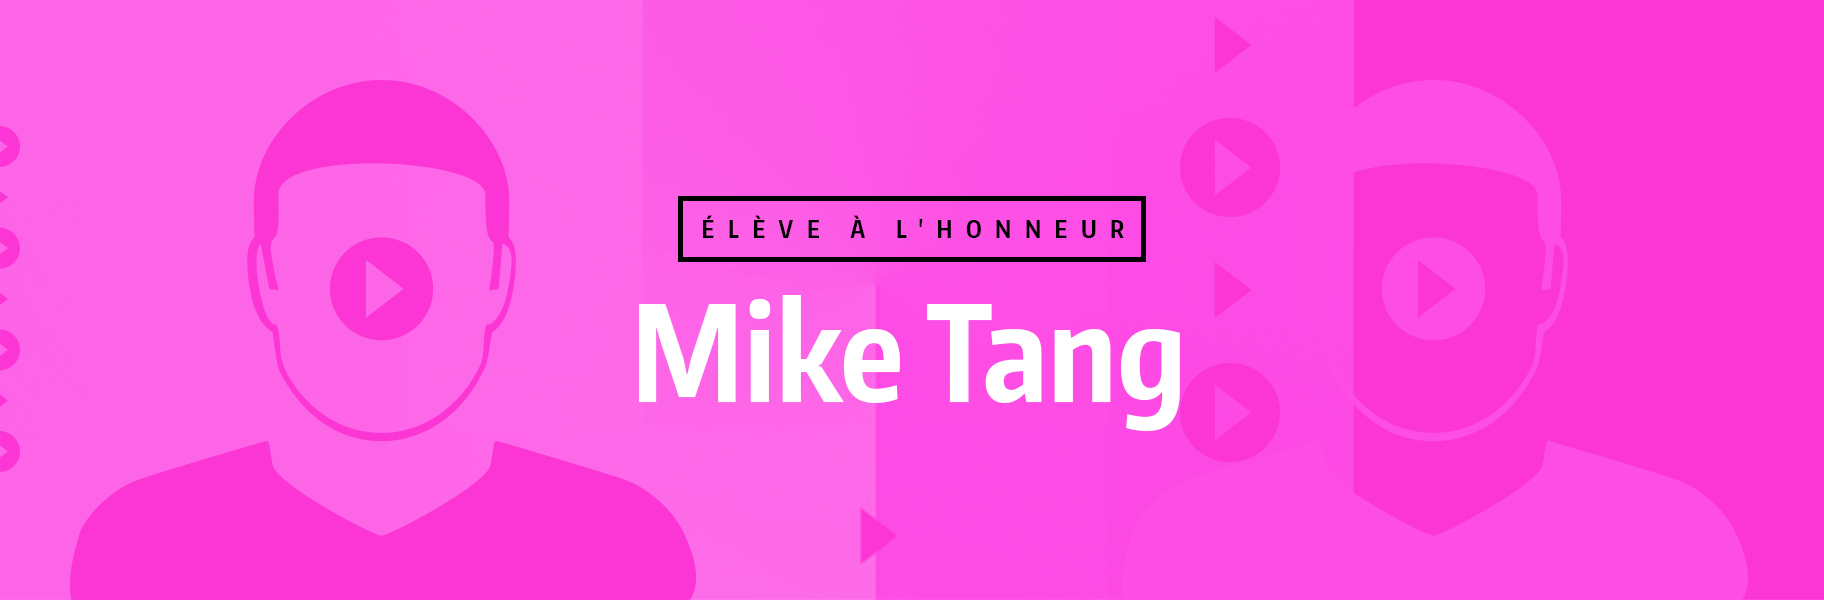 Élève à l'honneur - Mike Tang